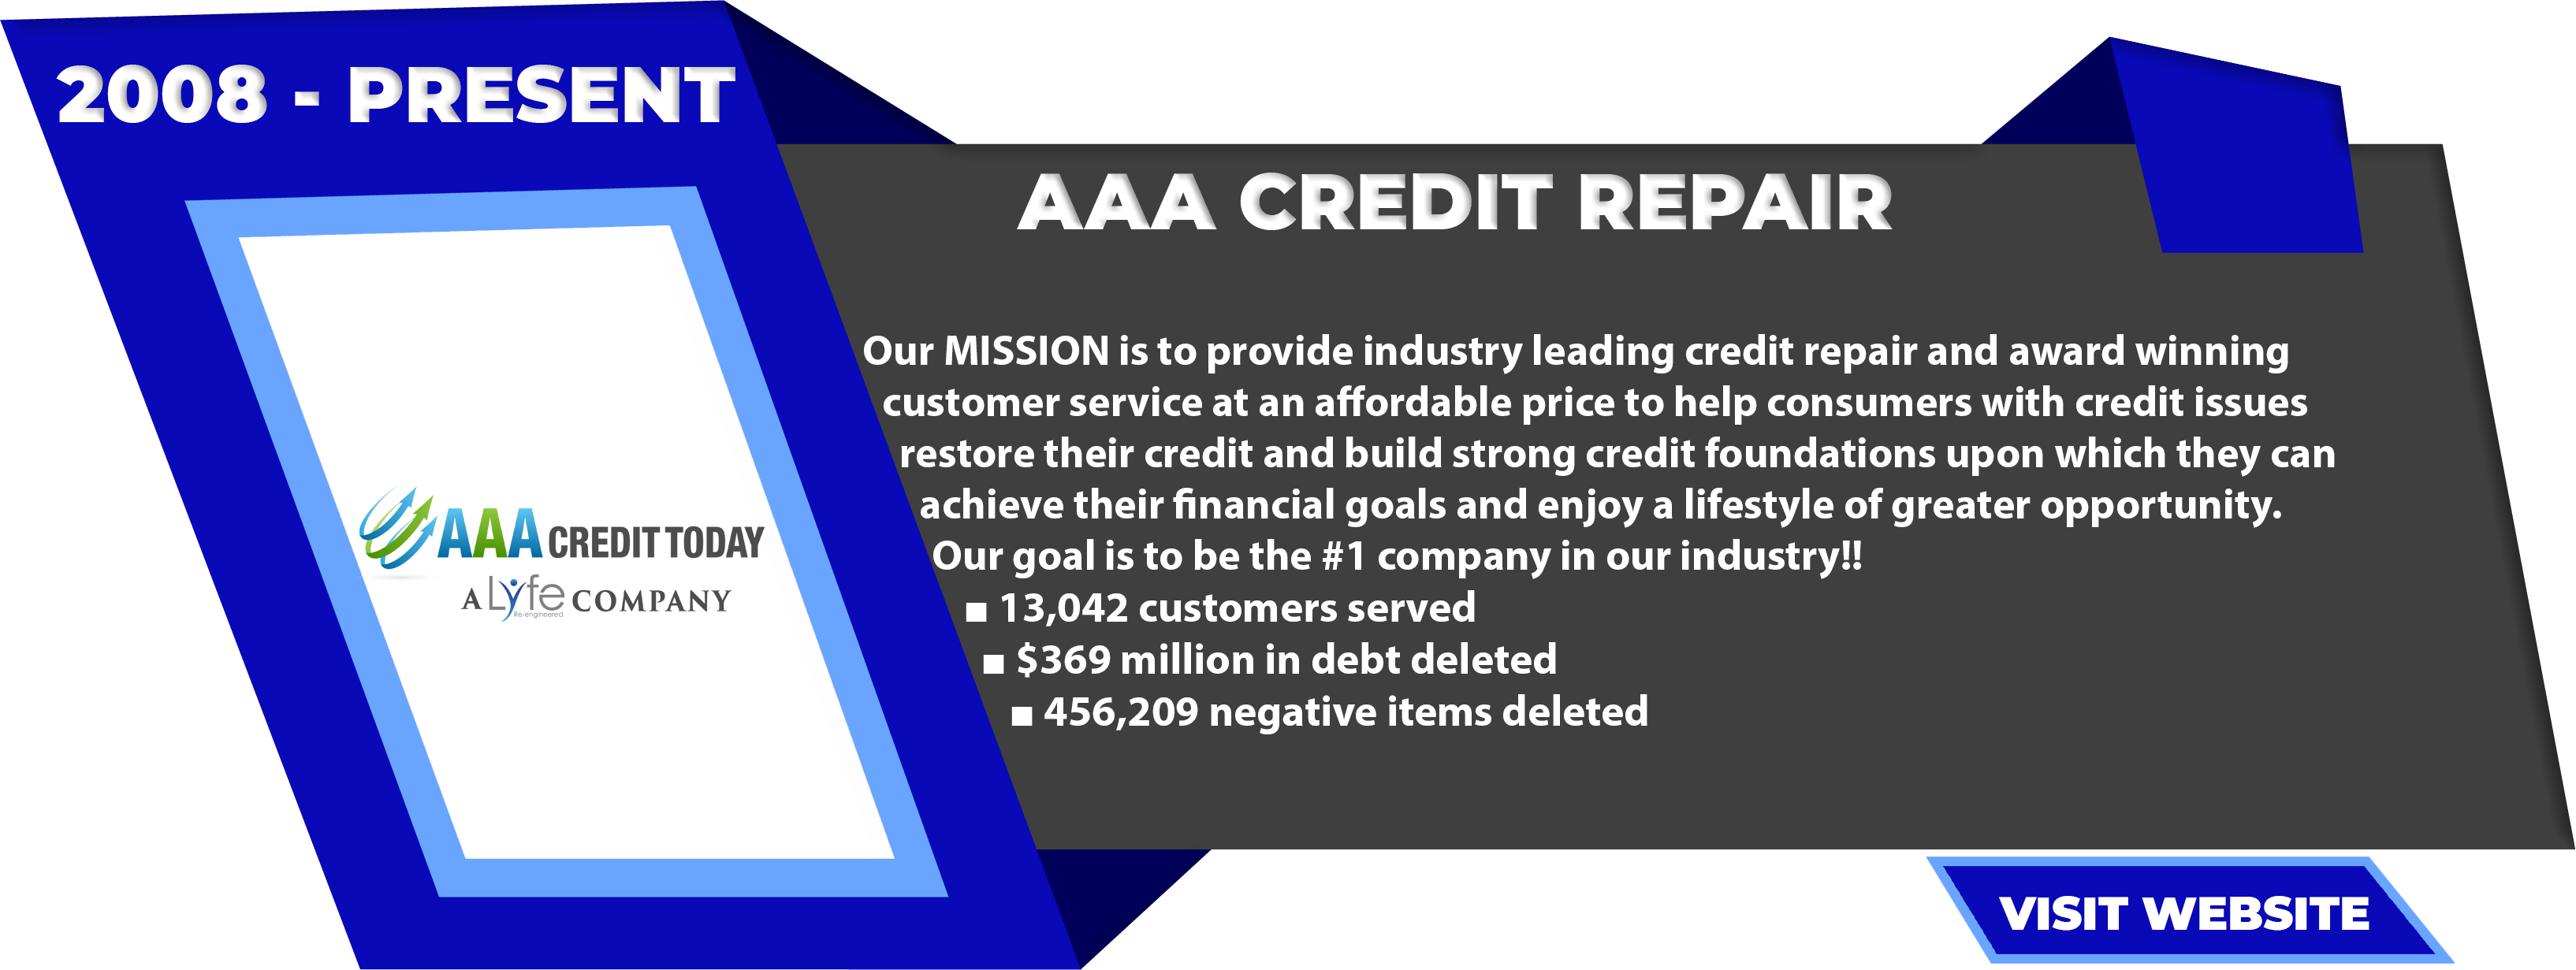 AAA-Credit-Repair-2008-Present-1